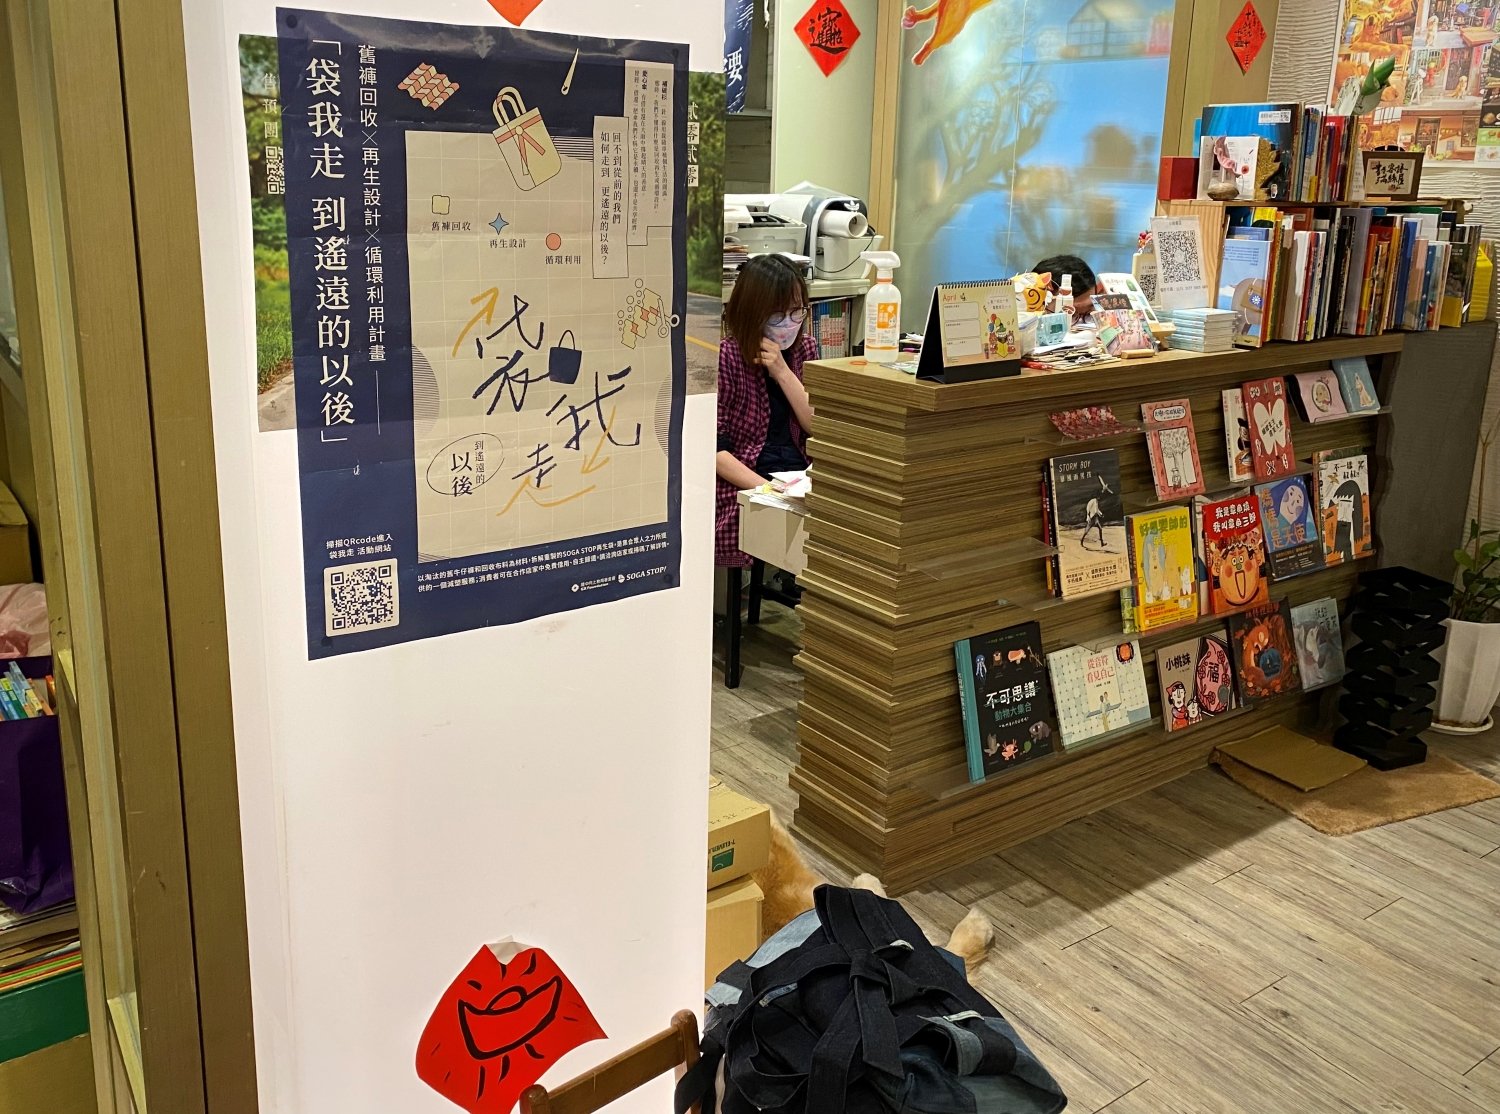 綠書店在櫃檯旁擺出循環袋供民眾借用，並張貼「袋我走」計畫宣傳海報。記者許玲瑄攝